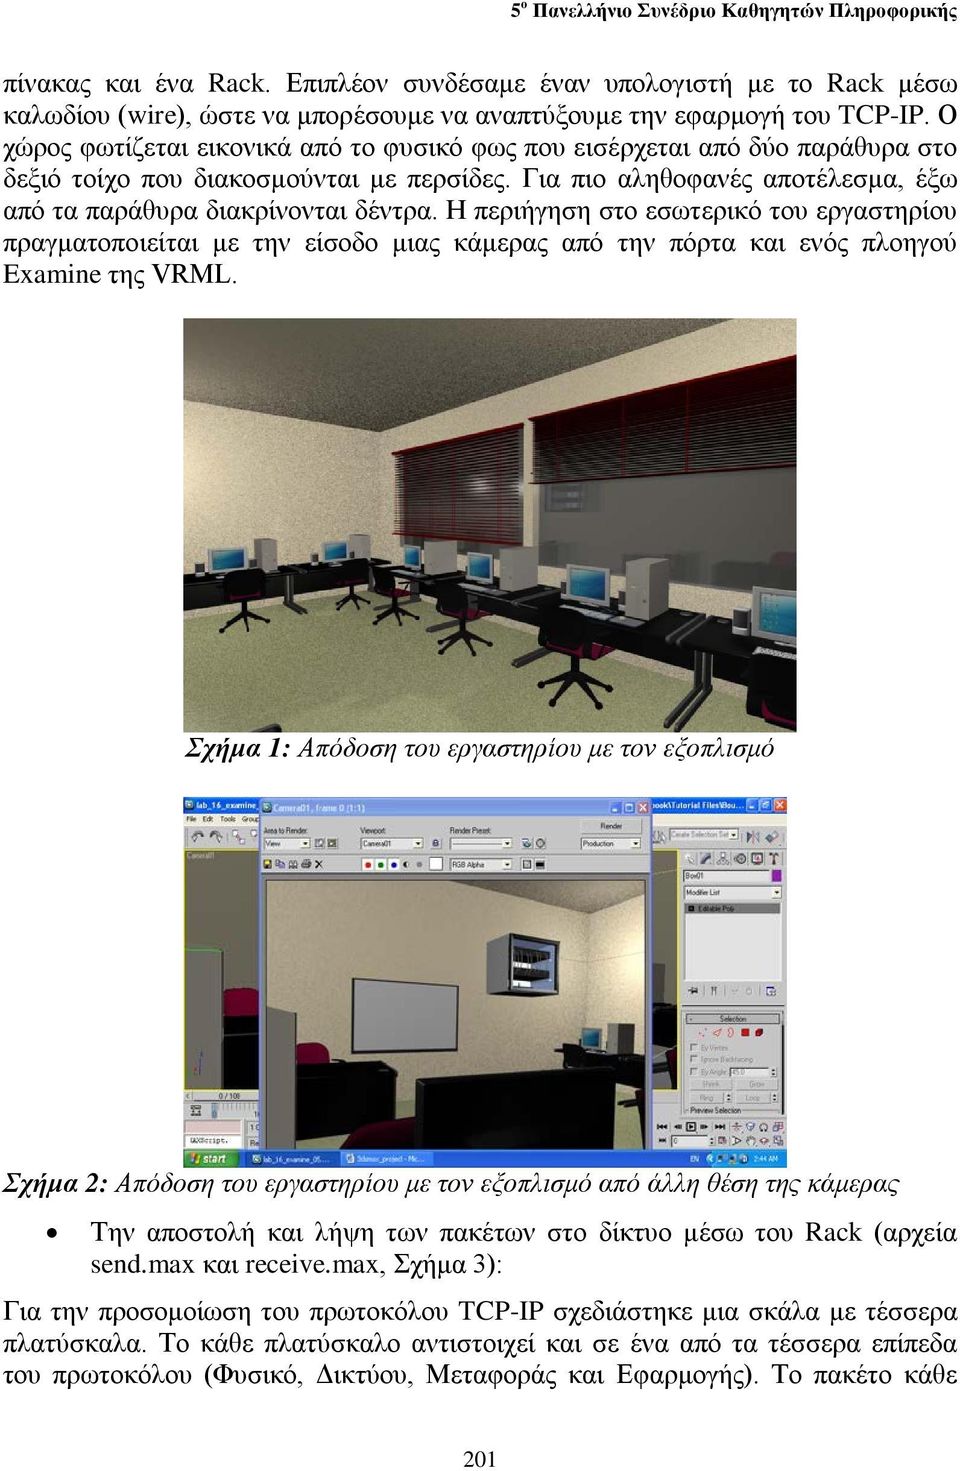 Η περιήγηση στο εσωτερικό του εργαστηρίου πραγματοποιείται με την είσοδο μιας κάμερας από την πόρτα και ενός πλοηγού Examine της VRML.